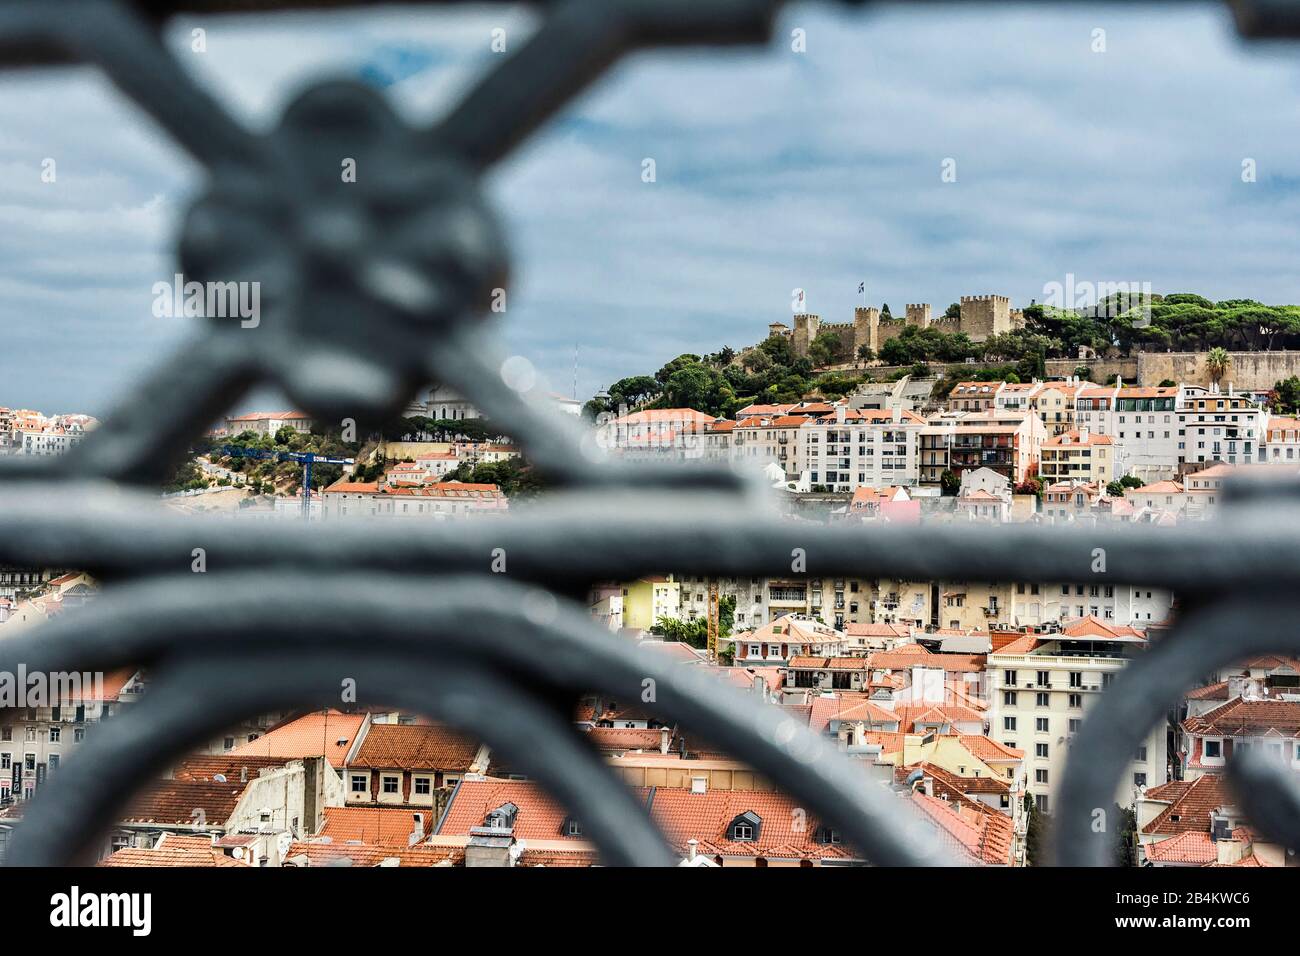 Europa, Portugal, Hauptstadt, Altstadt von Lissabon, Aussichtspunkt, Blick auf die Ruine Castelo de Sao Jorge auf dem Burghügel, sichtbar durch Metallbalustrade im Vordergrund Stockfoto